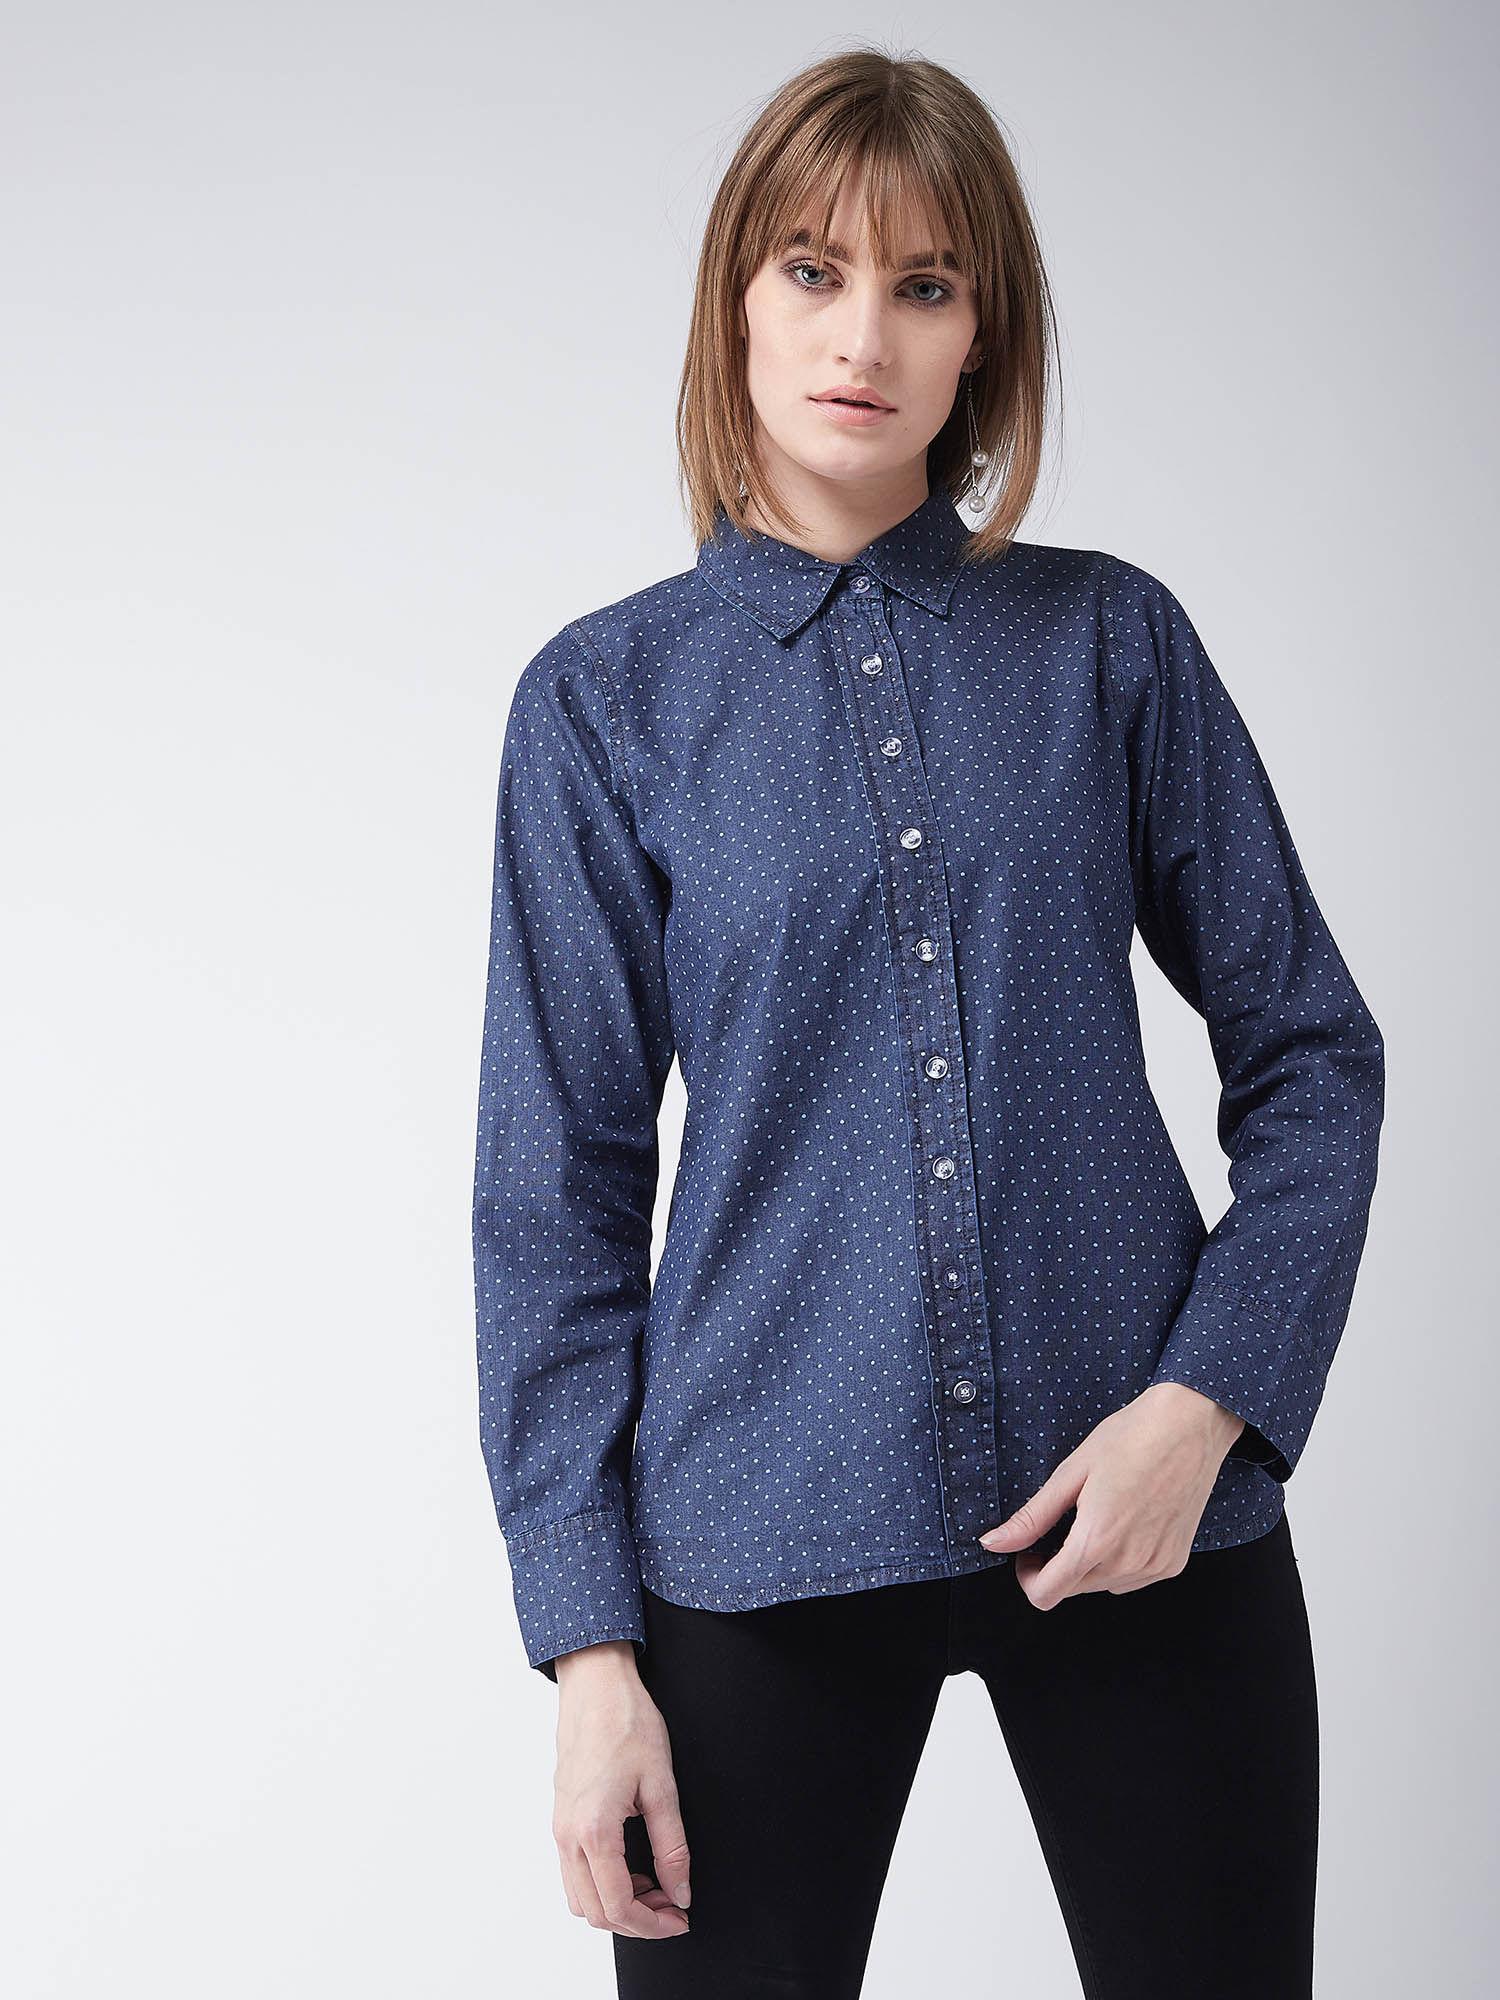 navy blue cotton polo neck denim printed shirt regular length buttoned closure shirt